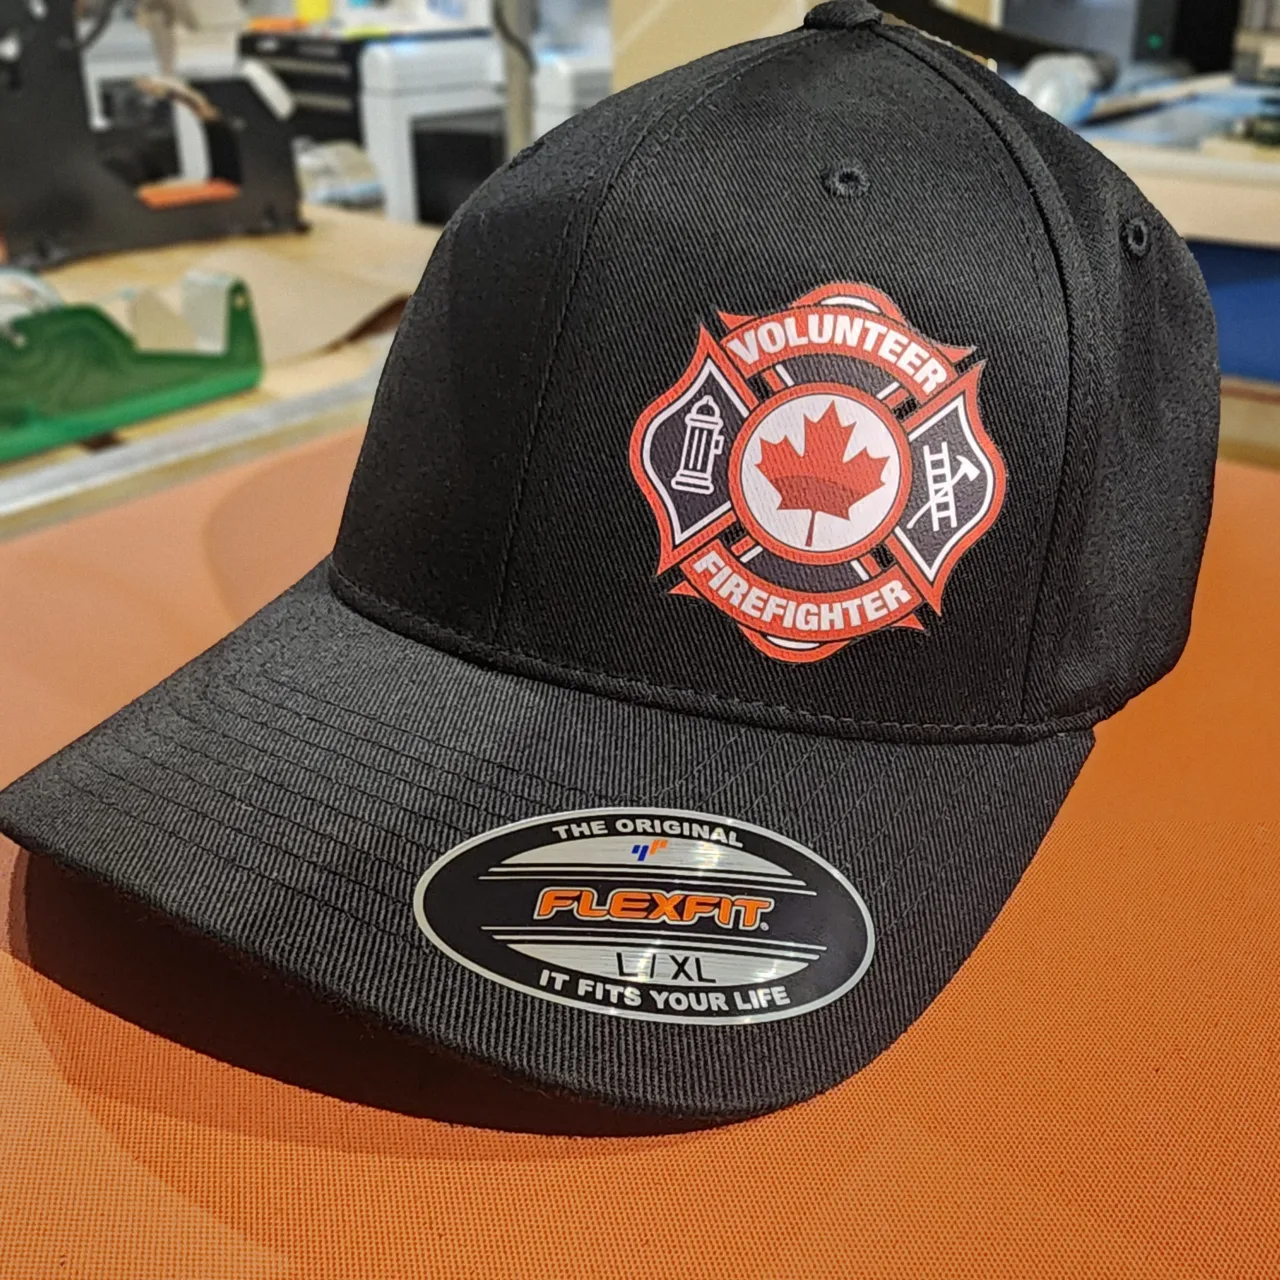 Volunteer Firefighter hat